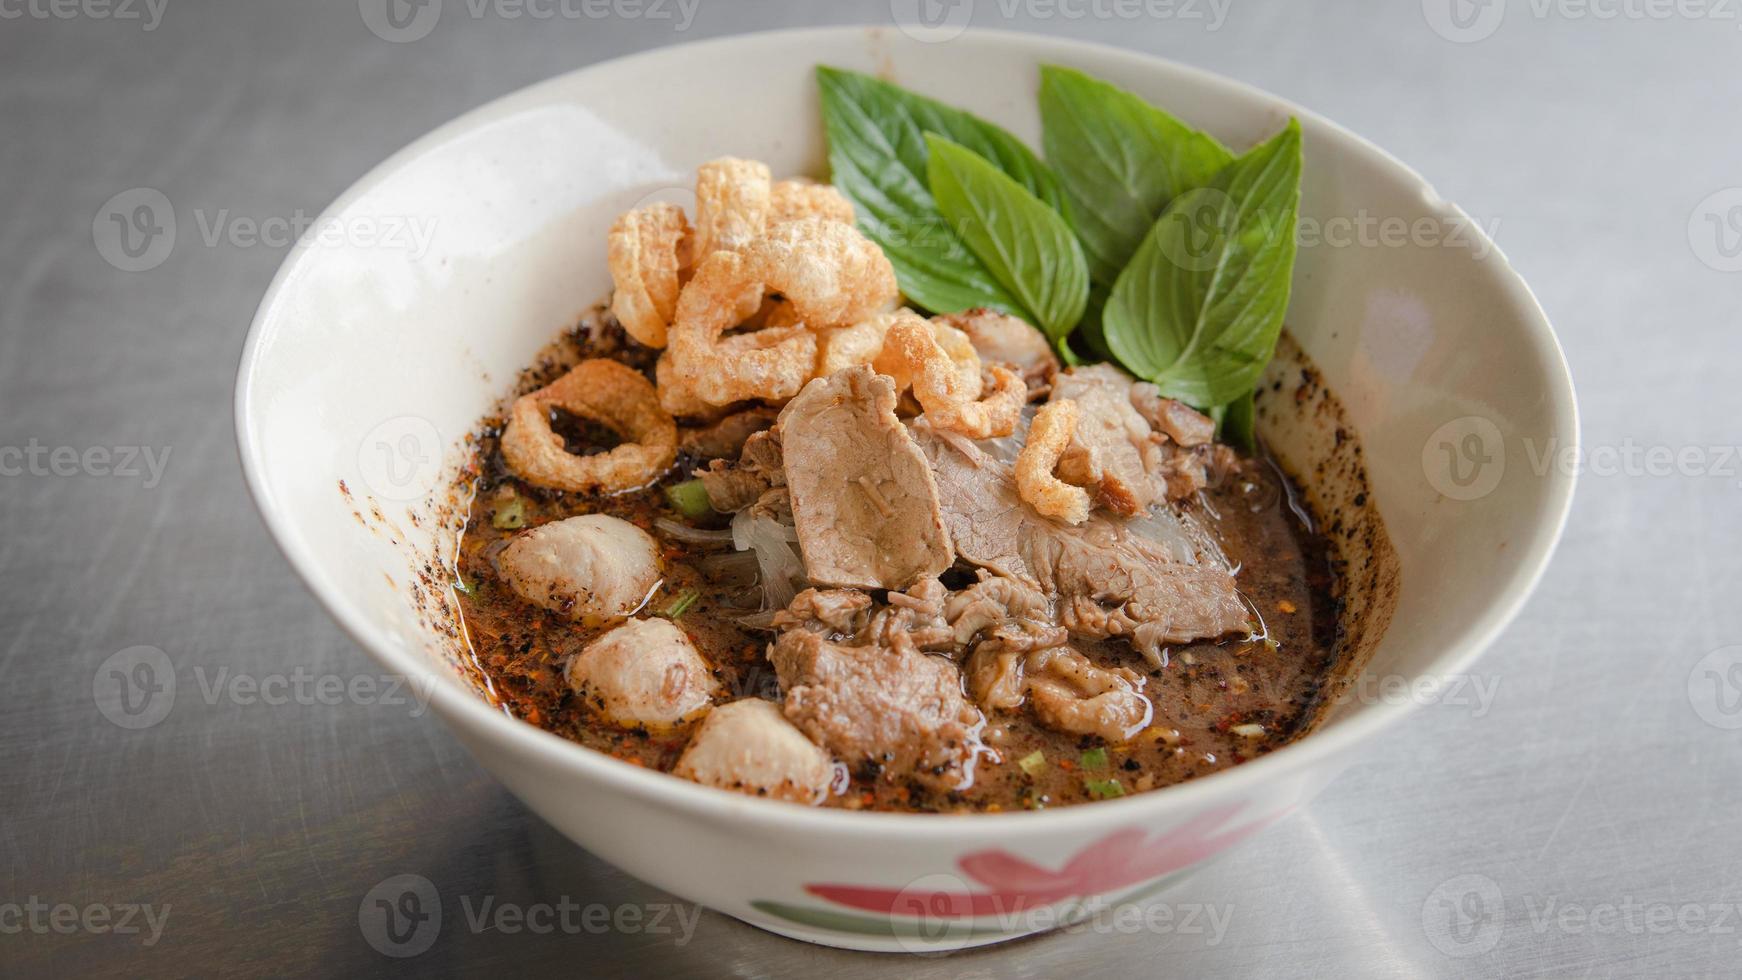 Fideos de barco tailandeses en sopa espesa agregada sangre con bolas de cerdo, carne de res en rodajas e hígado servido con albahaca y piel de cerdo frita crujiente. foto